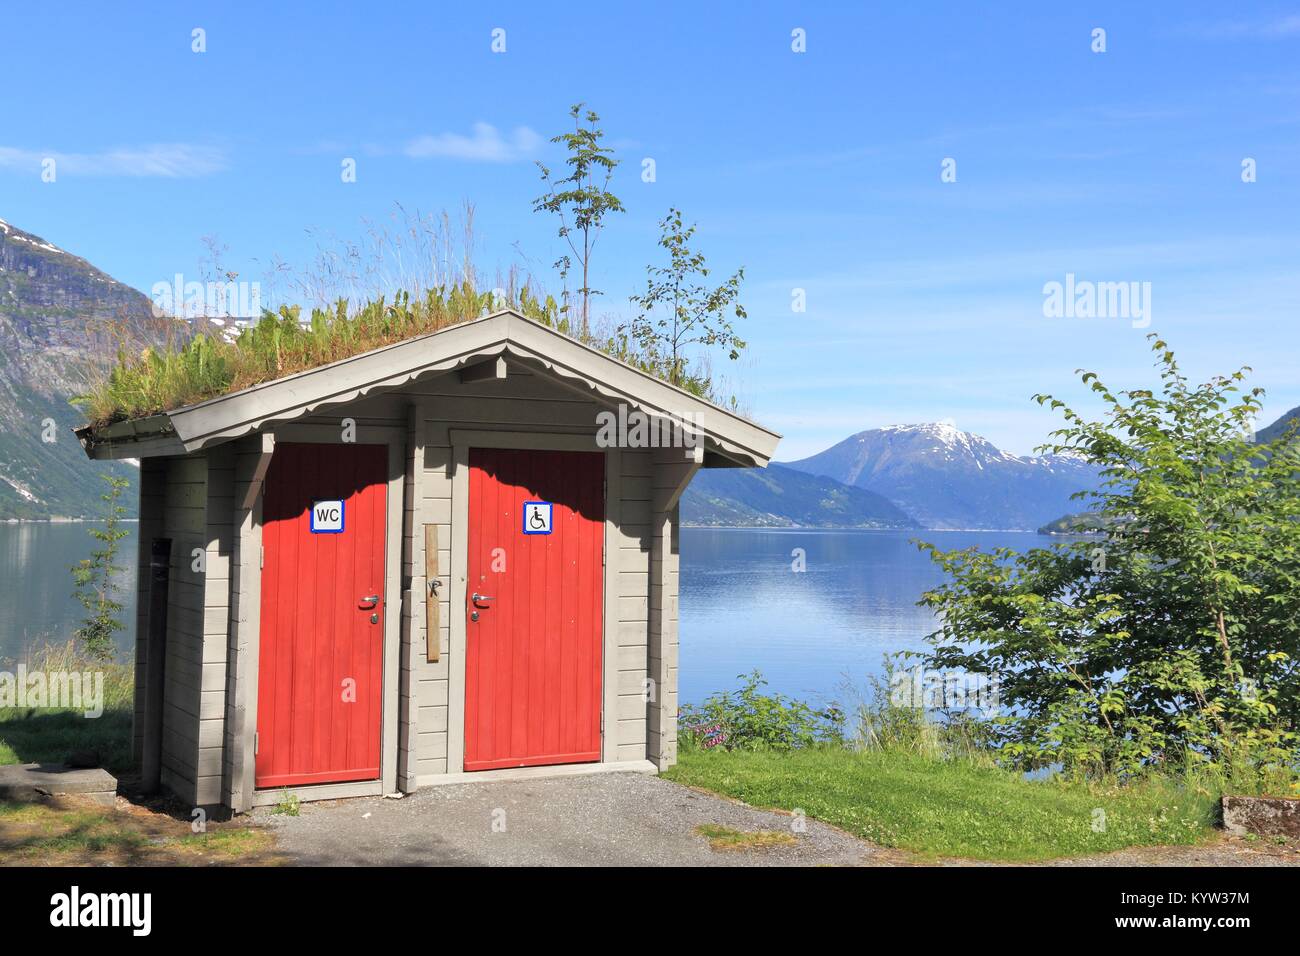 Restroom turistico in corrispondenza di una zona di riposo accanto a un fiordo in Norvegia. Hardangerfjord area. Foto Stock